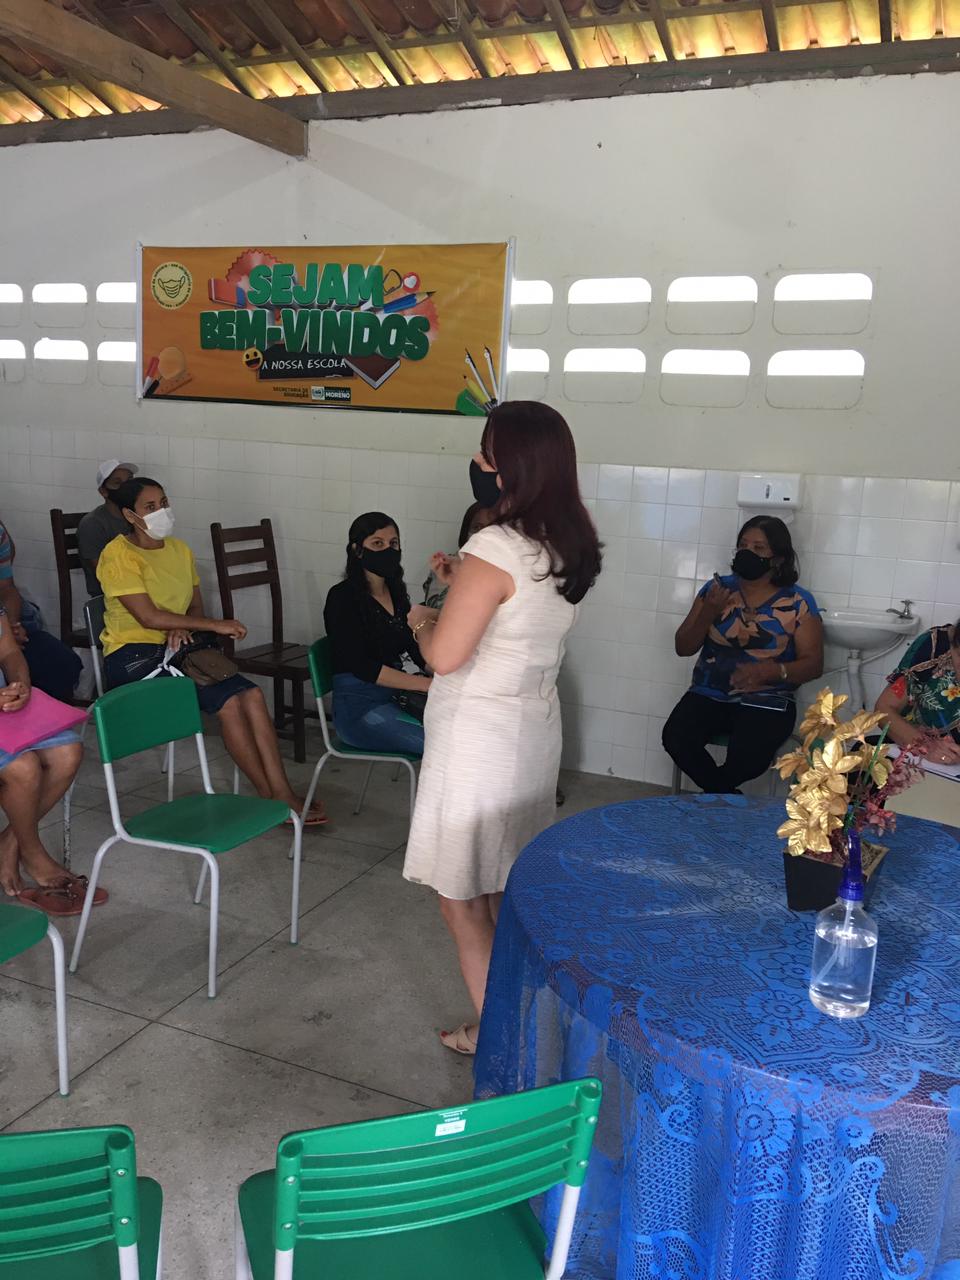 A Secretária de Educação do Município de Moreno realiza visita na Escola Engenho Serraria Br